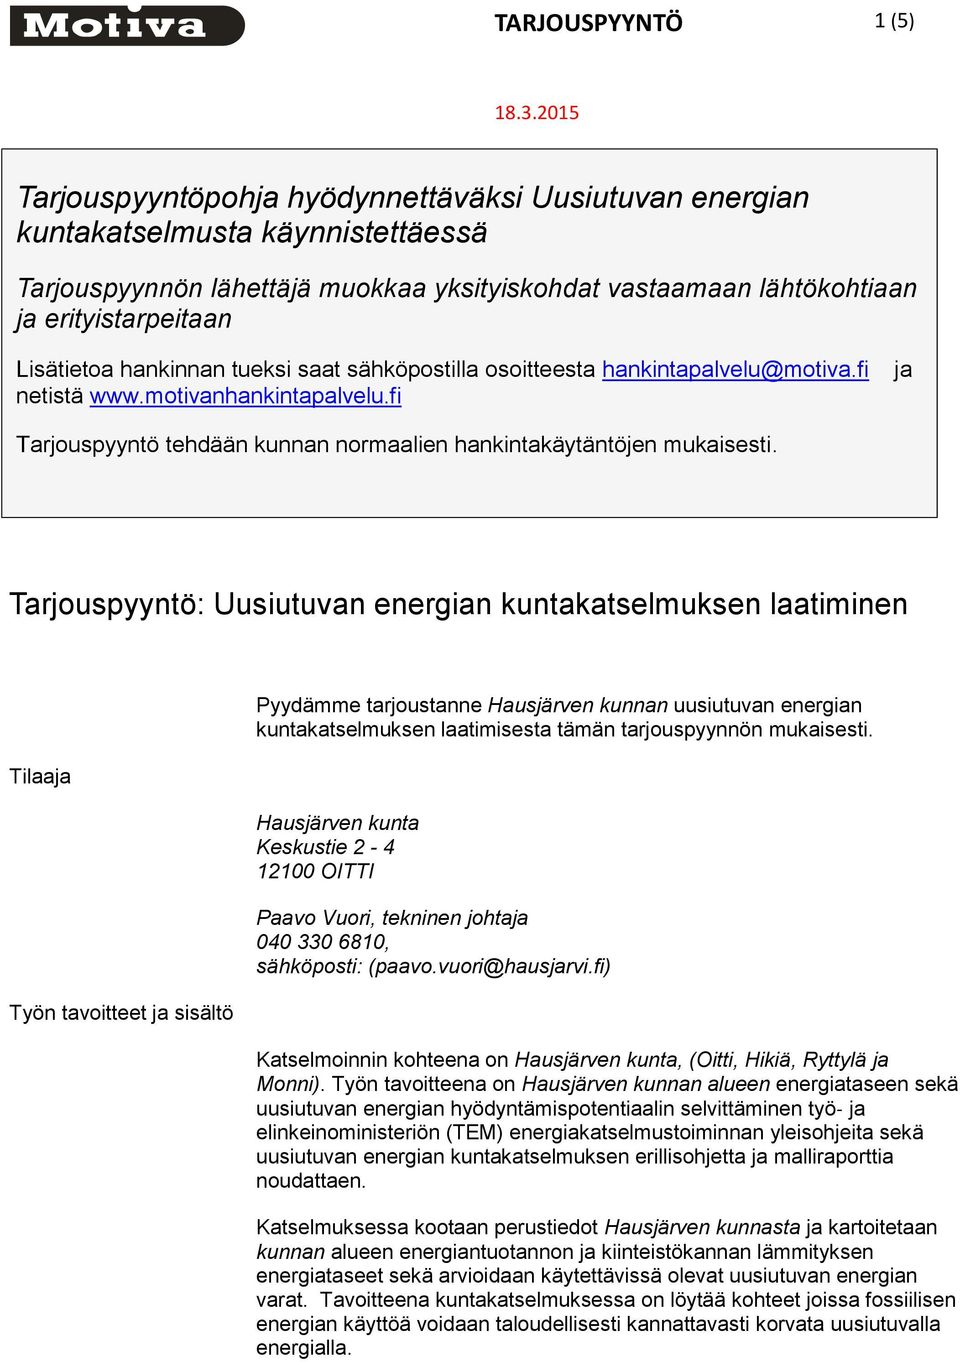 hankinnan tueksi saat sähköpostilla osoitteesta hankintapalvelu@motiva.fi netistä www.motivanhankintapalvelu.fi ja Tarjouspyyntö tehdään kunnan normaalien hankintakäytäntöjen mukaisesti.